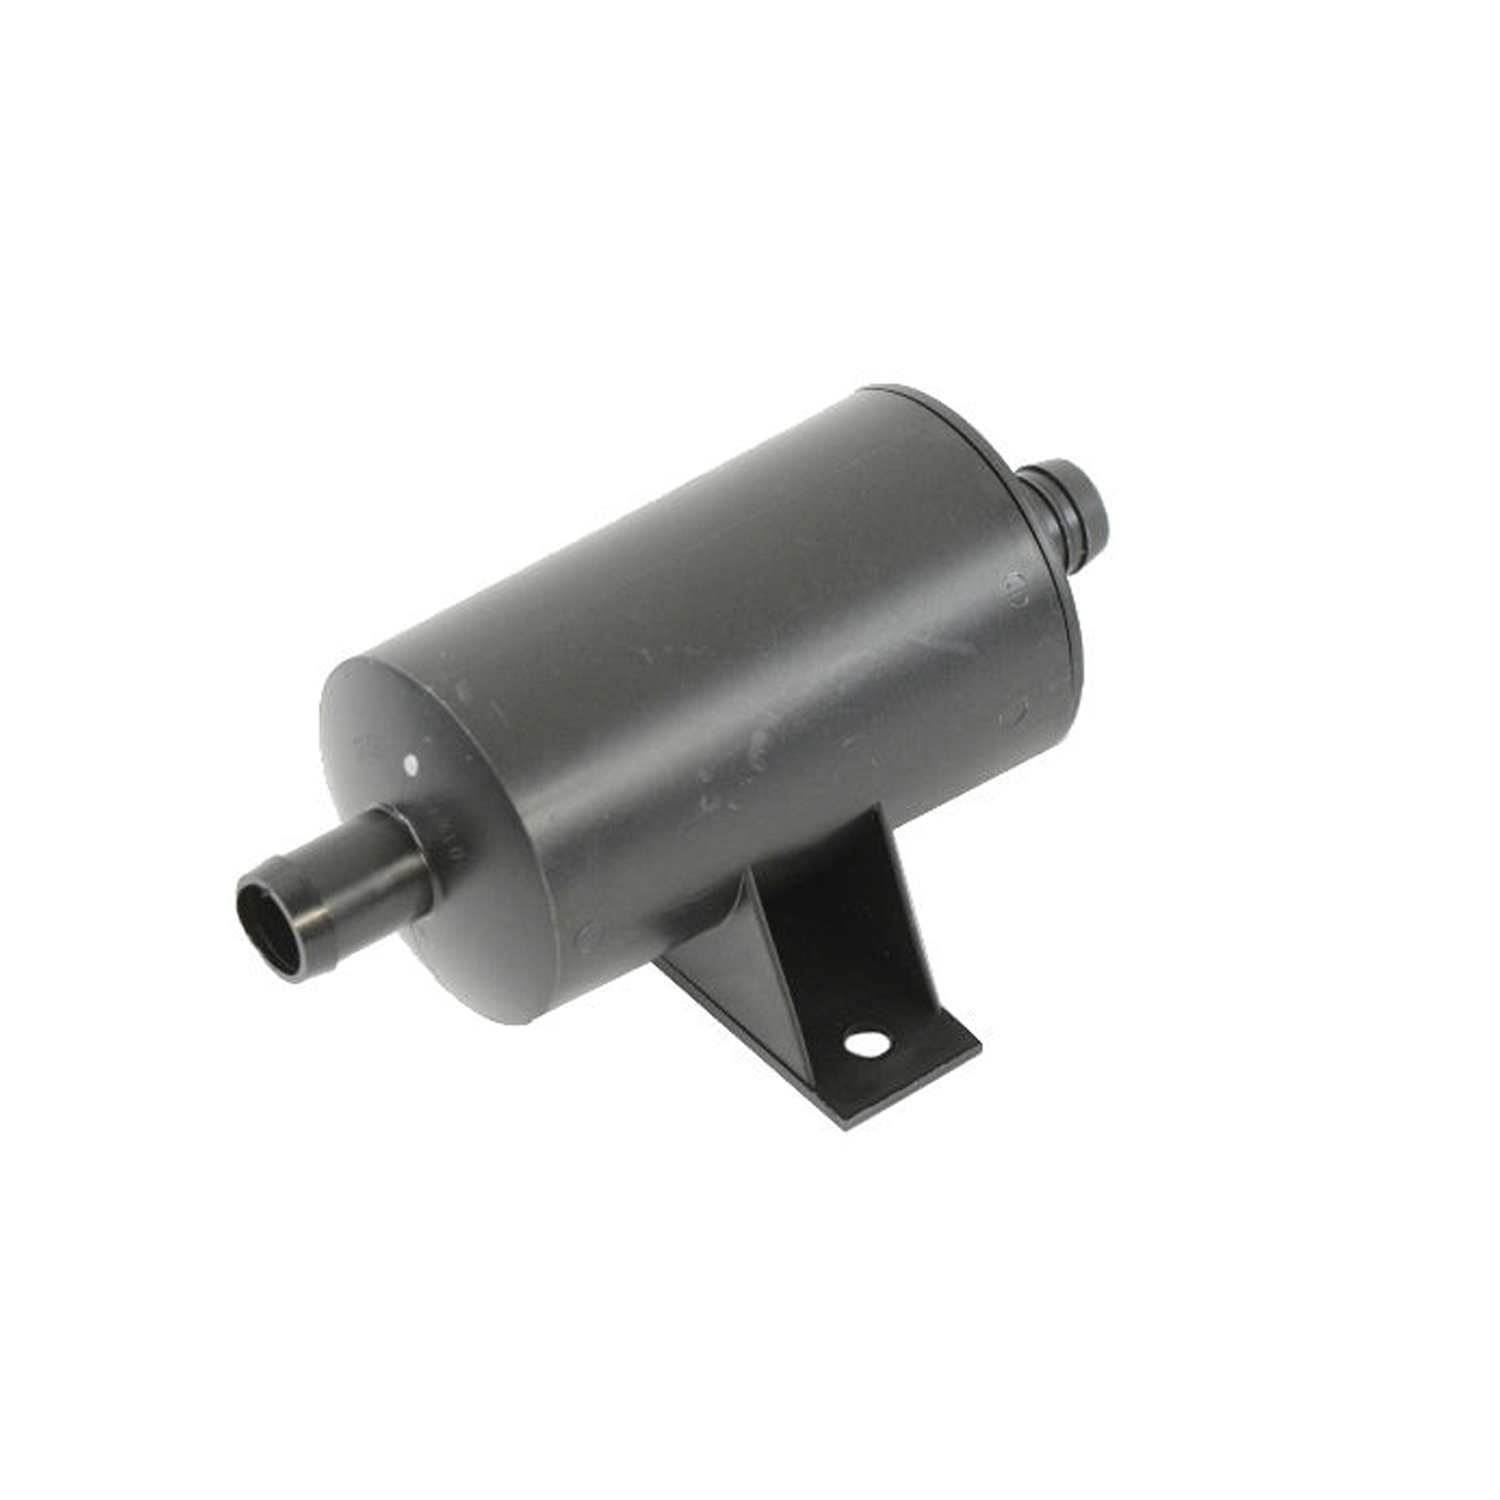 MOPAR PARTS - Fuel Vapor Leak Detection Pump Filter - MOP 04891561AA